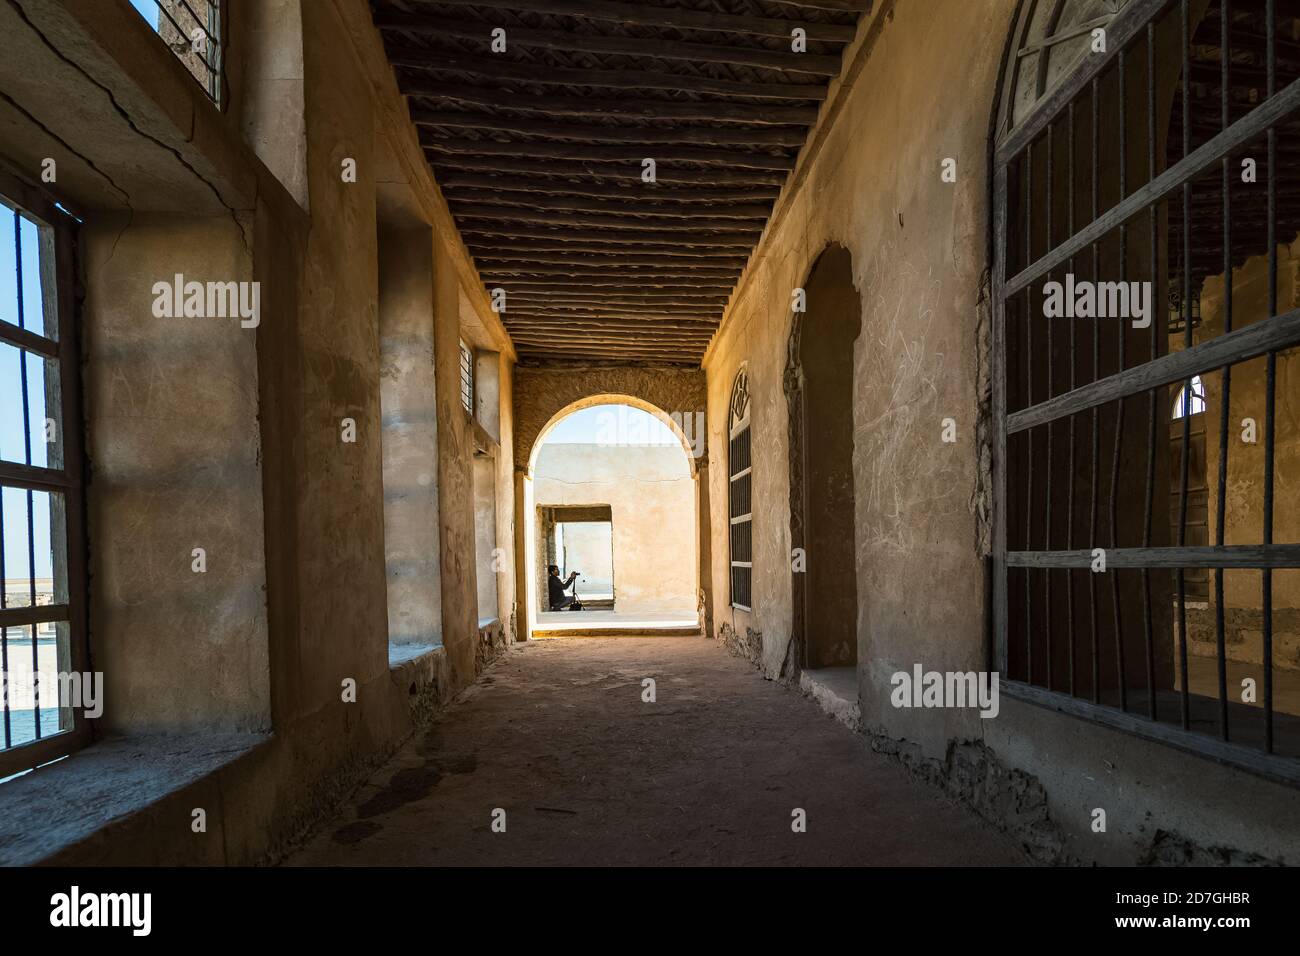 Bellissime immagini della storica vecchia porta Al-Uqair in Arabia Saudita. Foto Stock